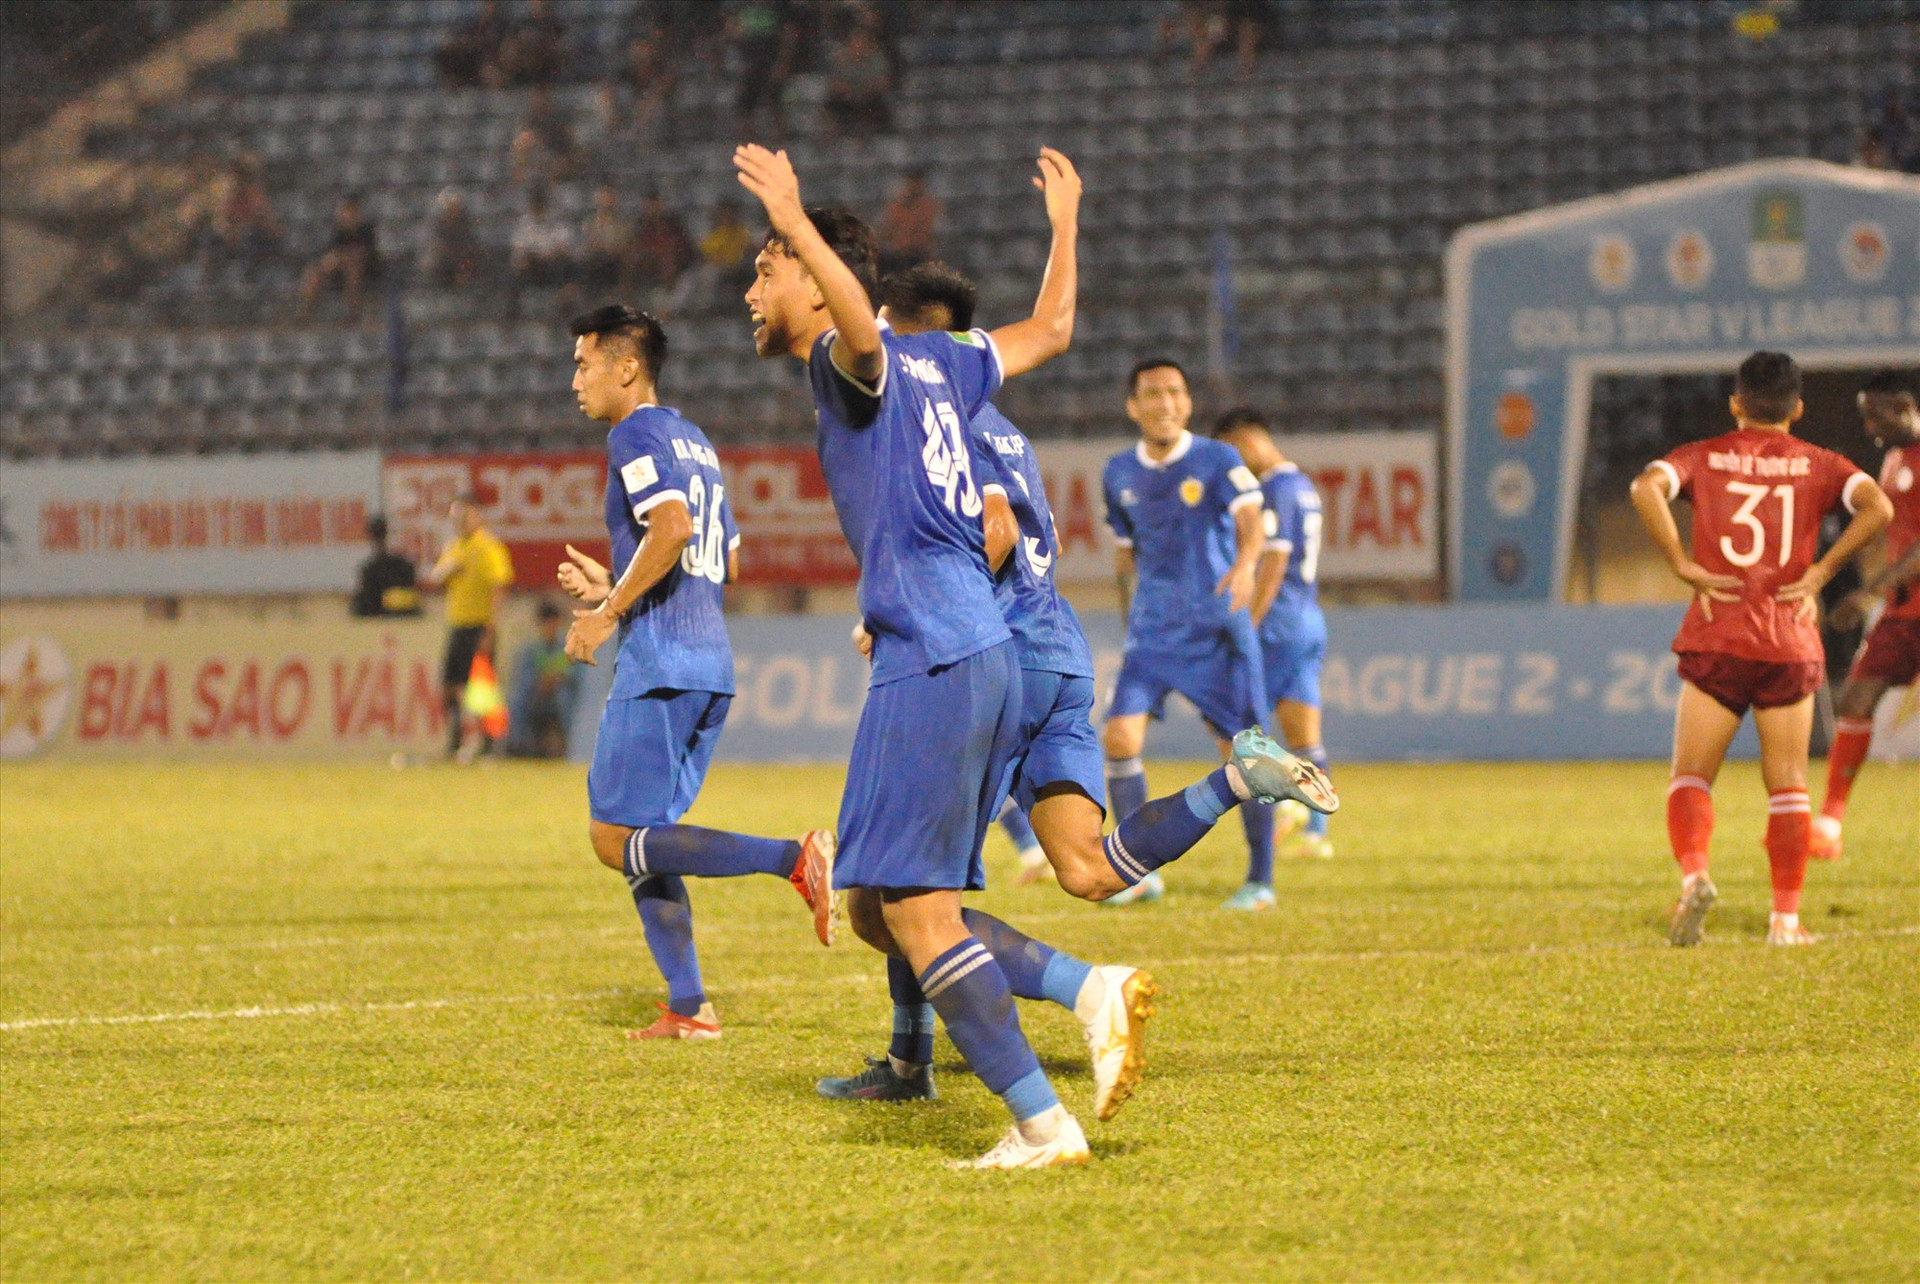 Niềm vui của trung vệ Lê Văn Hưng khi có trận đấu tỏa sáng với 2 bàn thắng và 1 đường chuyền thành bàn. Ảnh: T.V